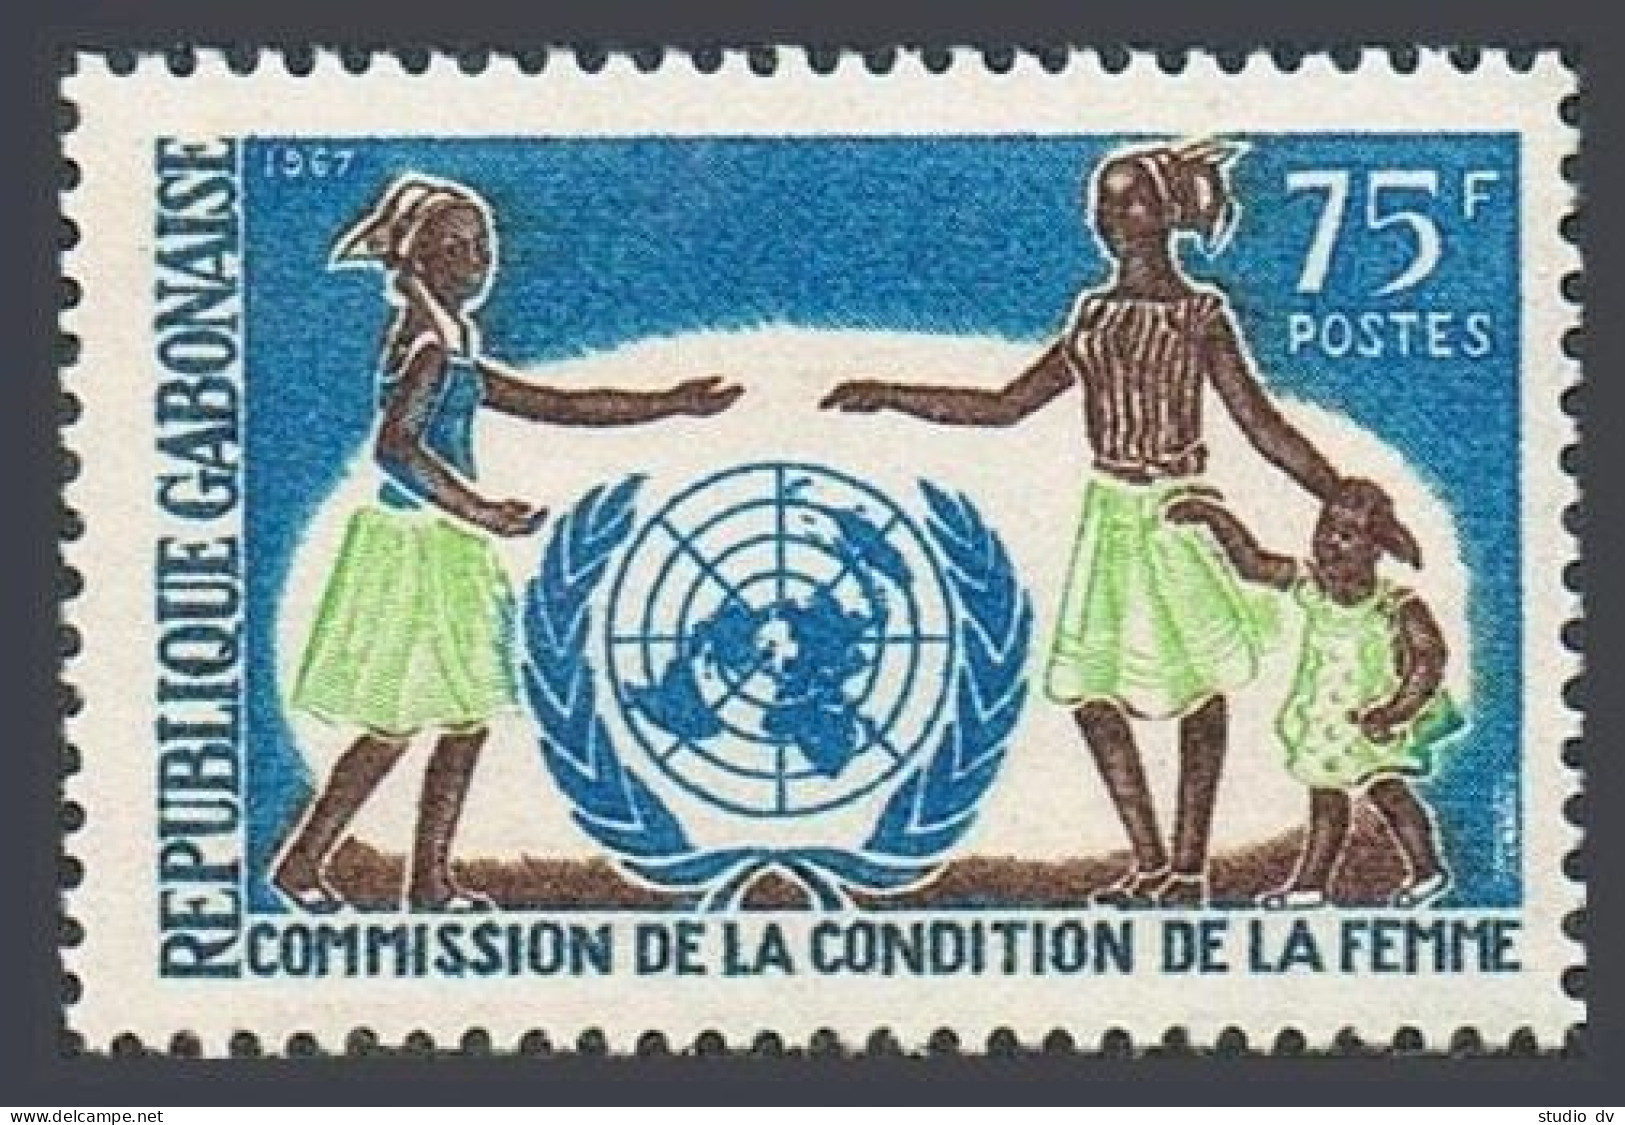 Gabon 220,hinged.Michel 285. UN Commission For Women,1967. - Gabon